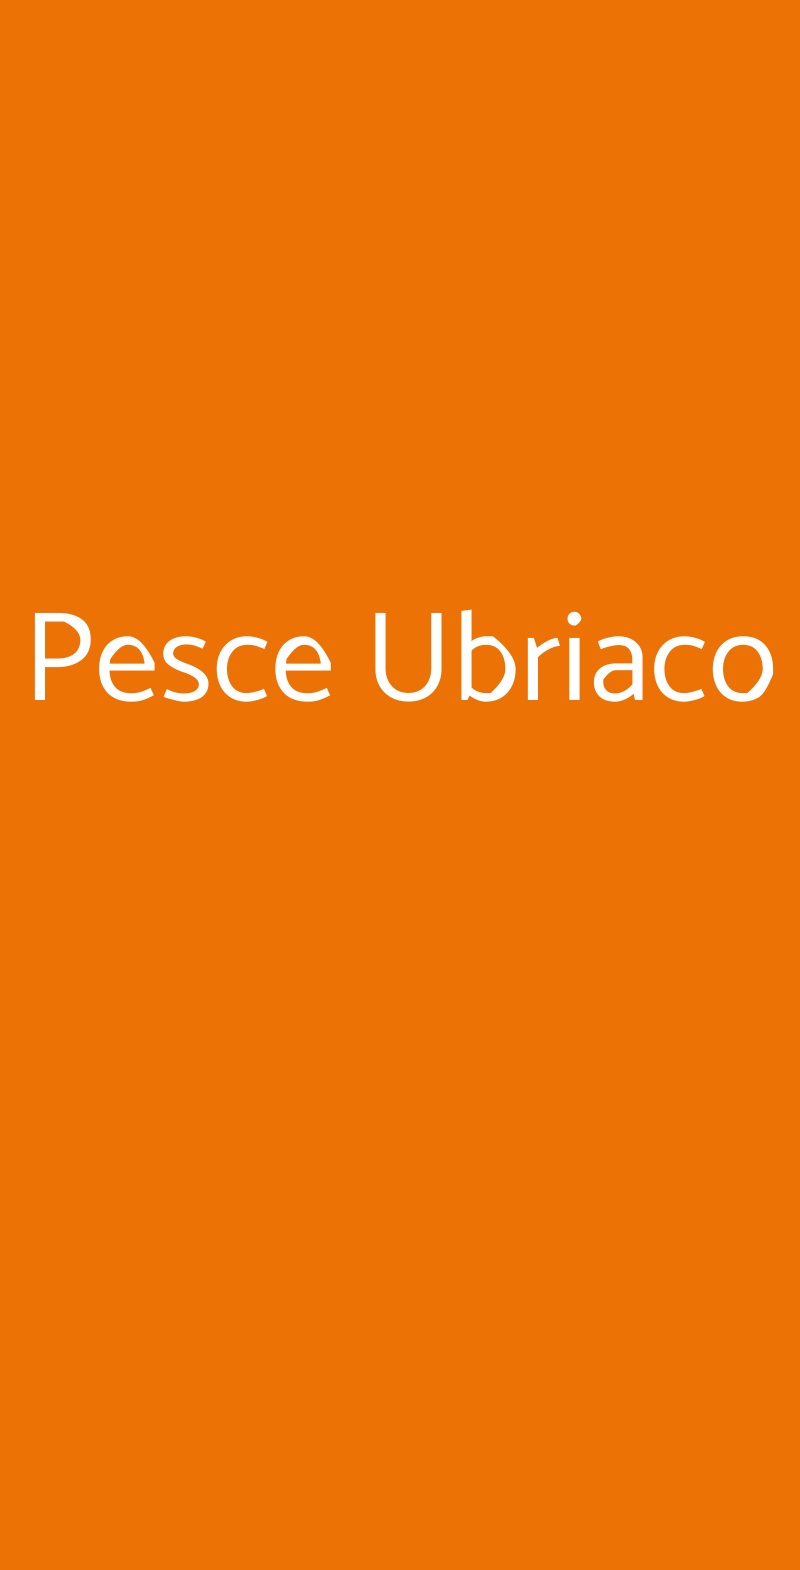 Pesce Ubriaco Milano menù 1 pagina